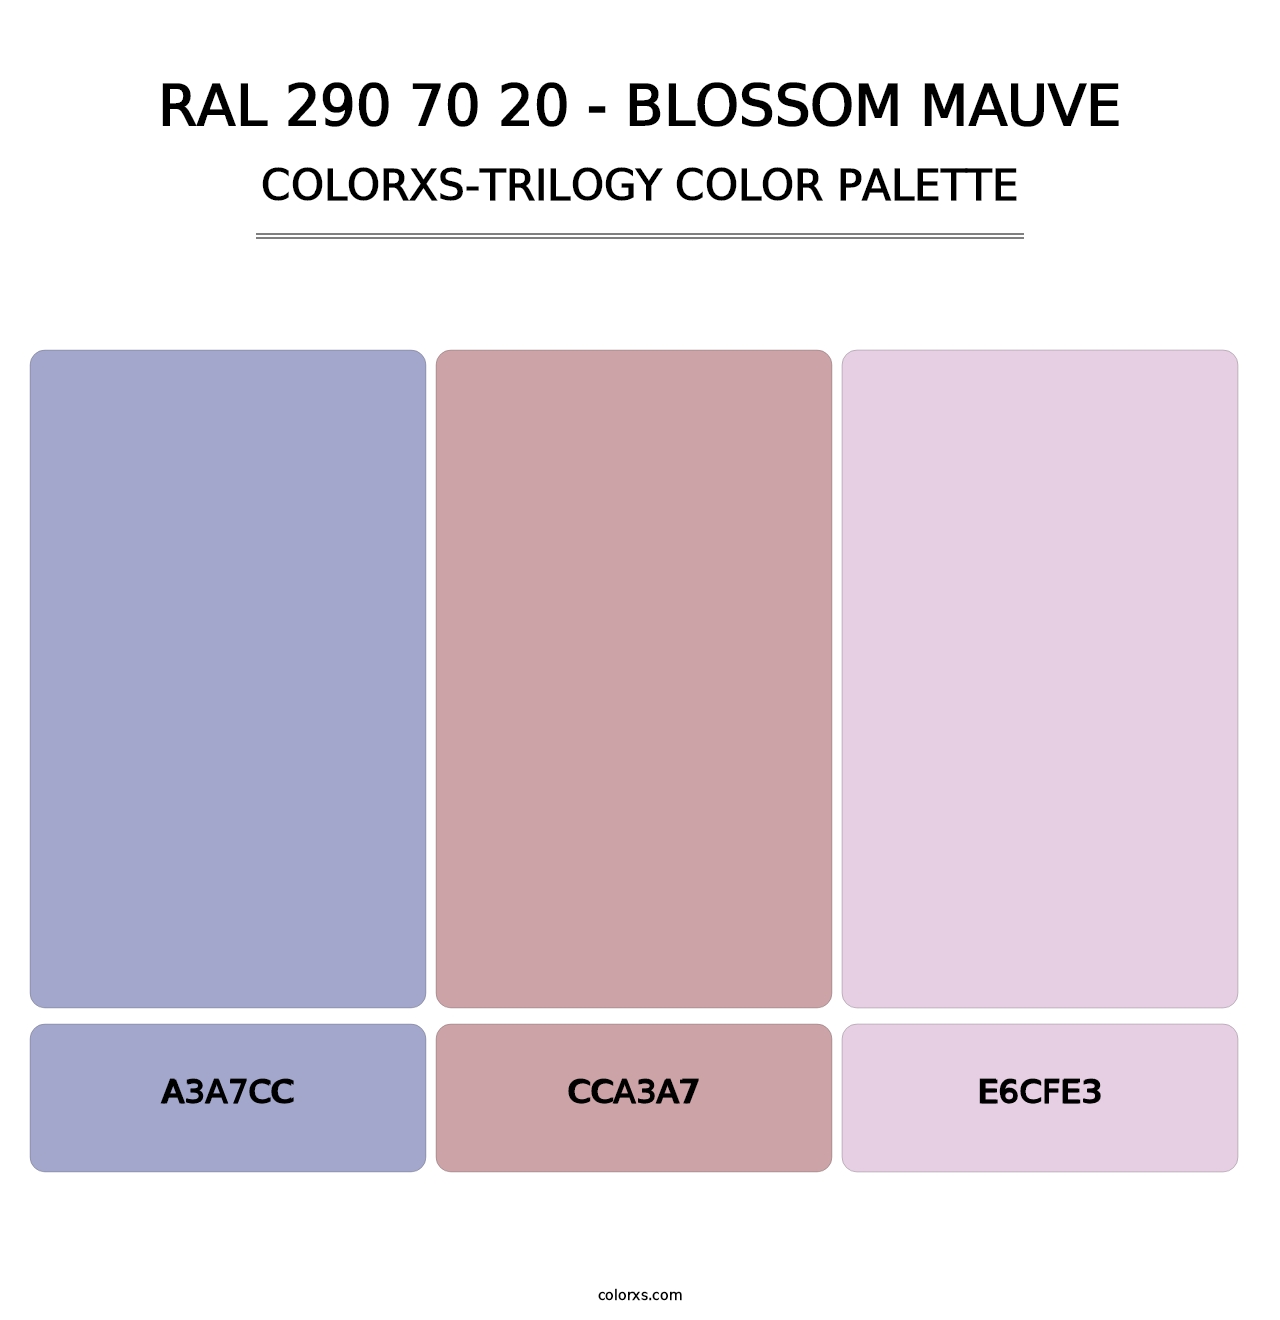 RAL 290 70 20 - Blossom Mauve - Colorxs Trilogy Palette